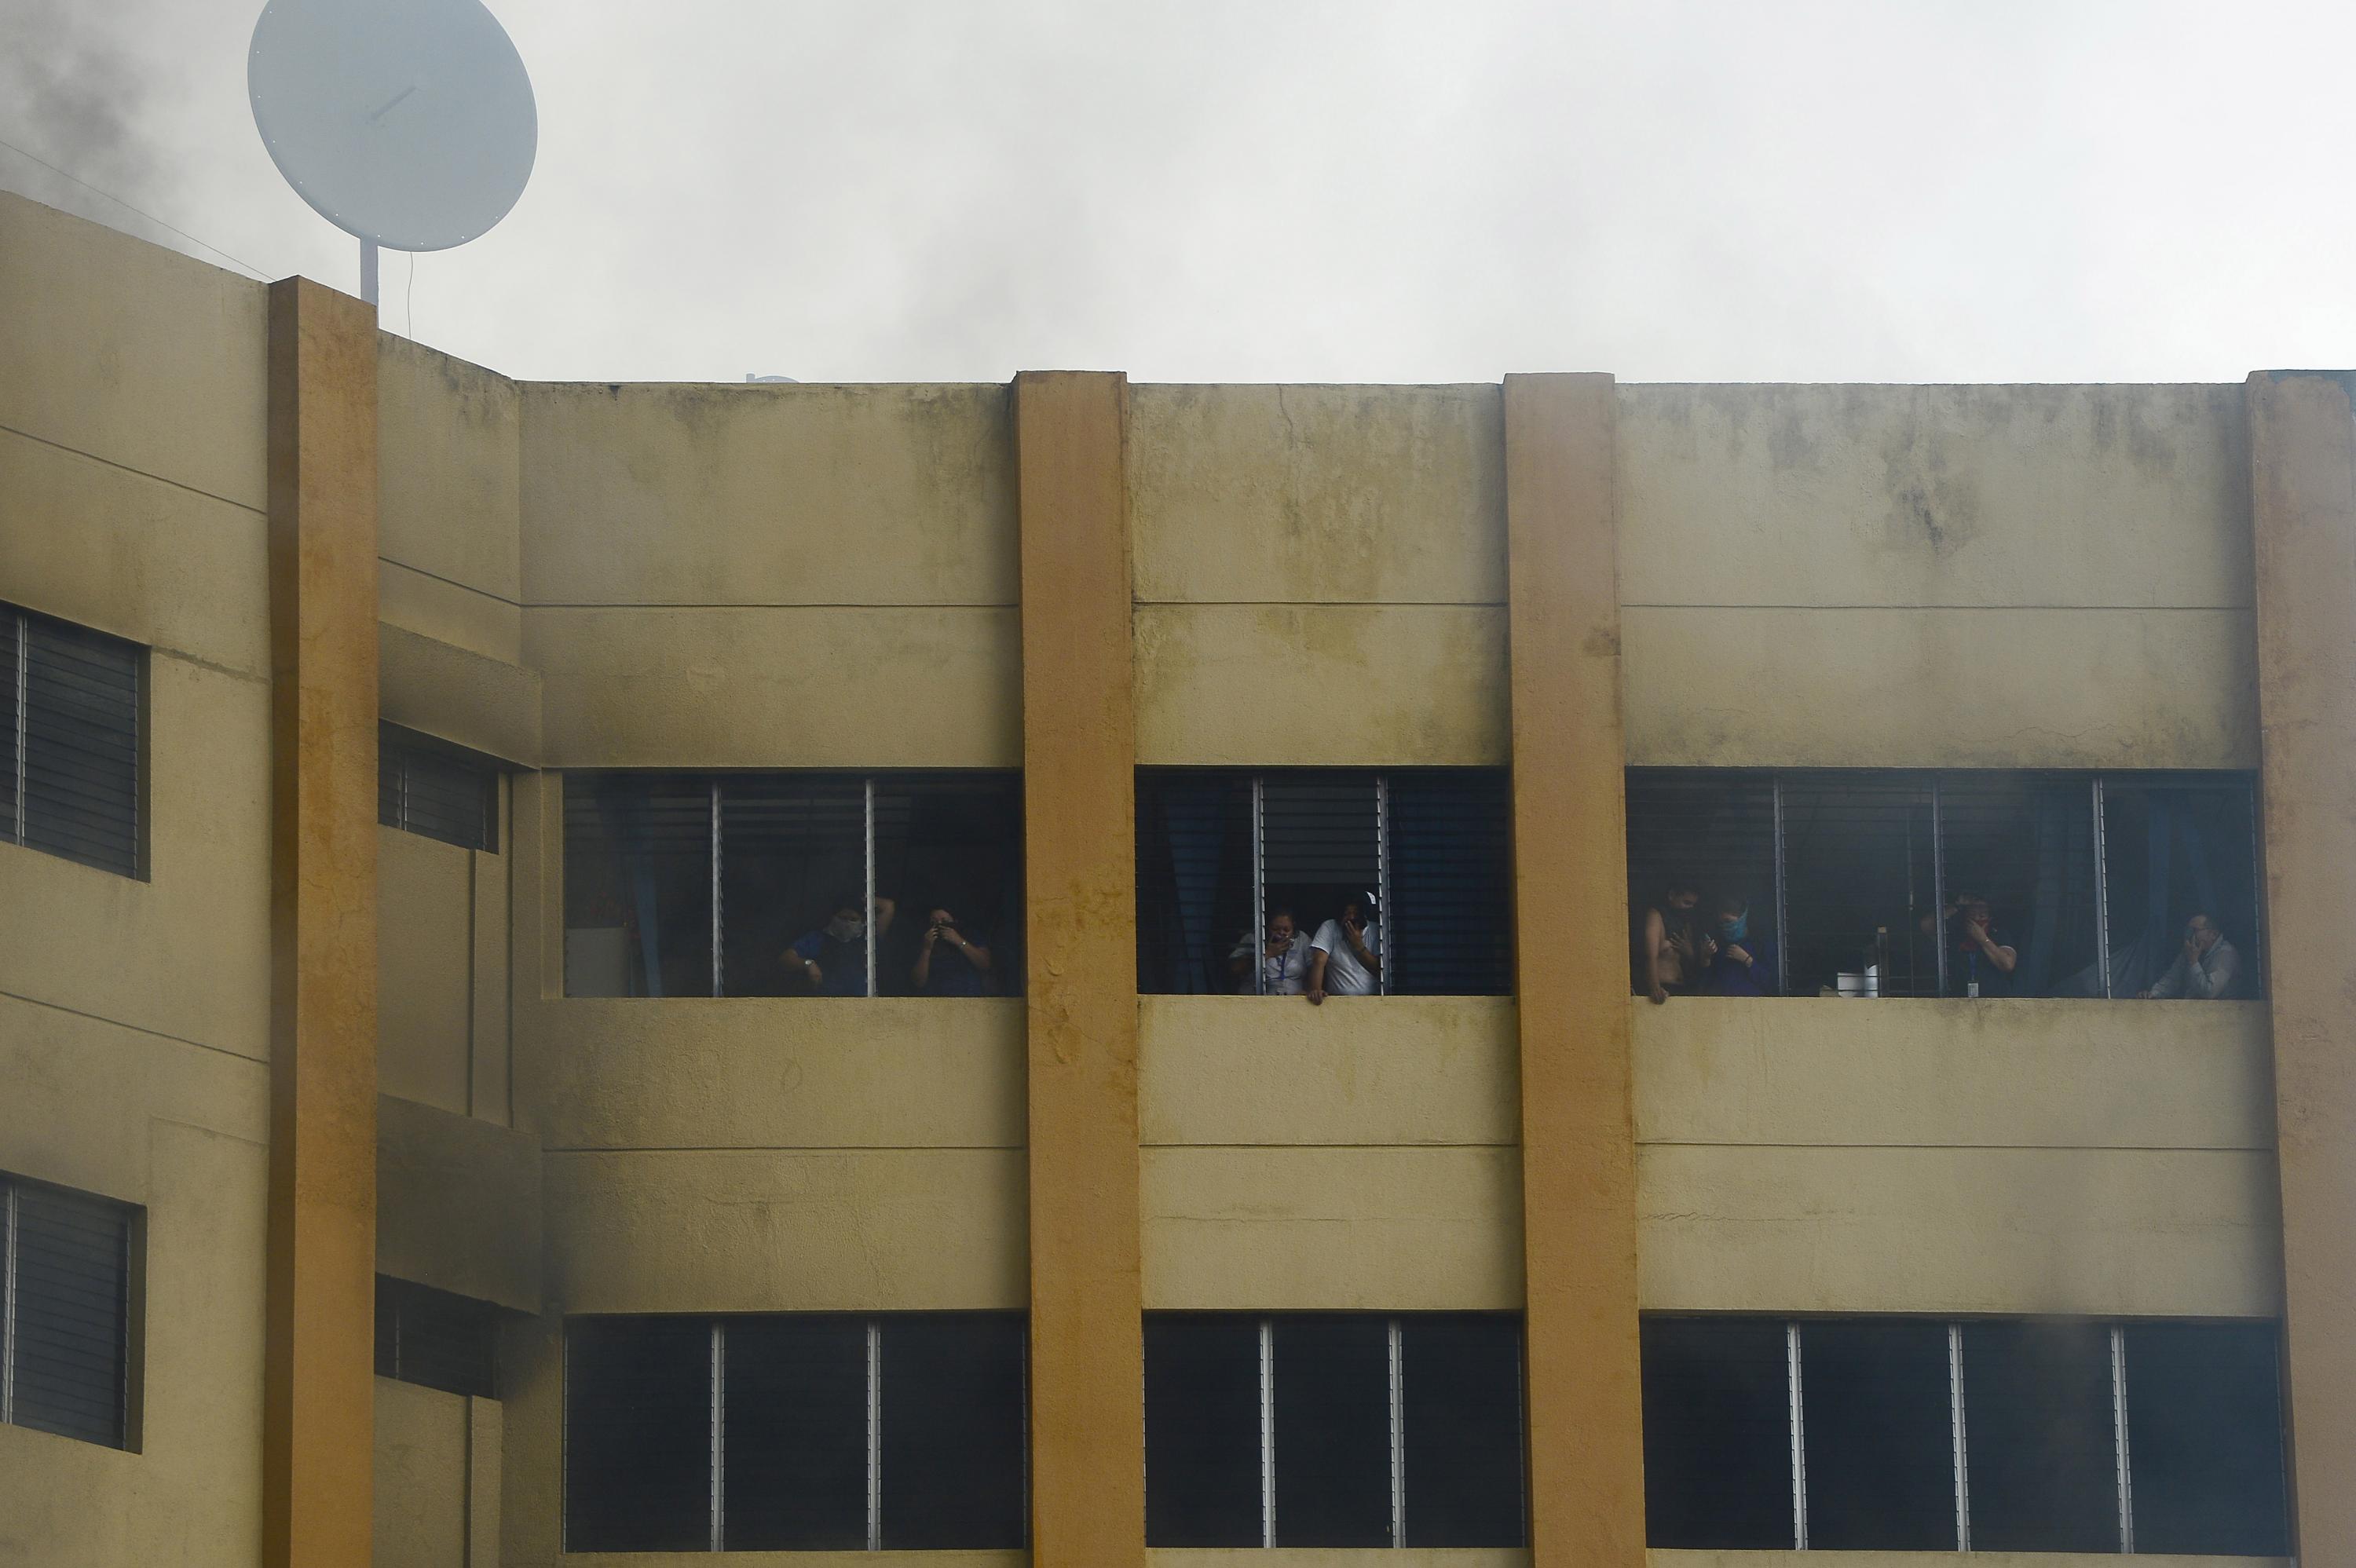 Empleados del Ministerio de Hacienda atrapados en el piso superios de la torre tres, minutos después de un voraz incendio que afecto los niveles 4, 5 y 6 del edificio. / AFP PHOTO / Marvin Recinos.